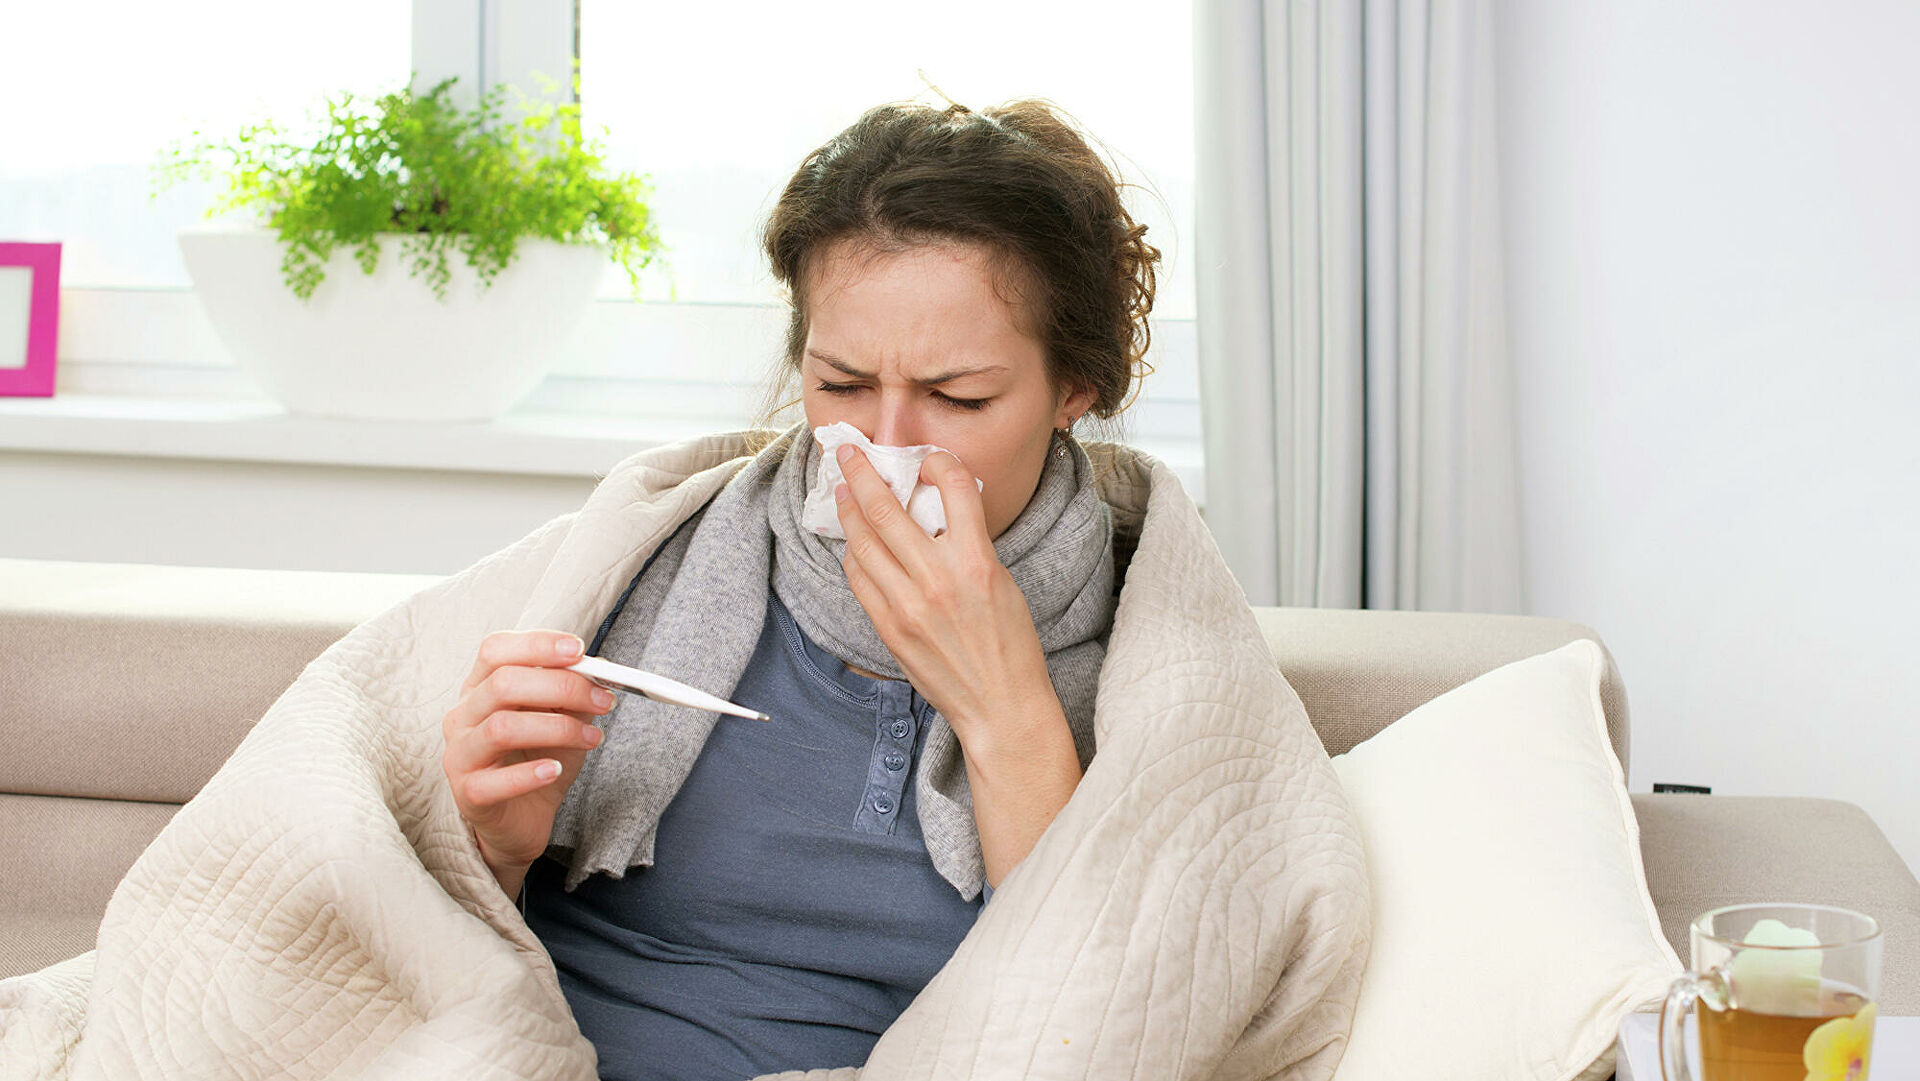 В Роспотребнадзоре развеяли основные мифы о гриппе. Оказалось, заболевание может протекать с нормальной температурой тела – что еще?